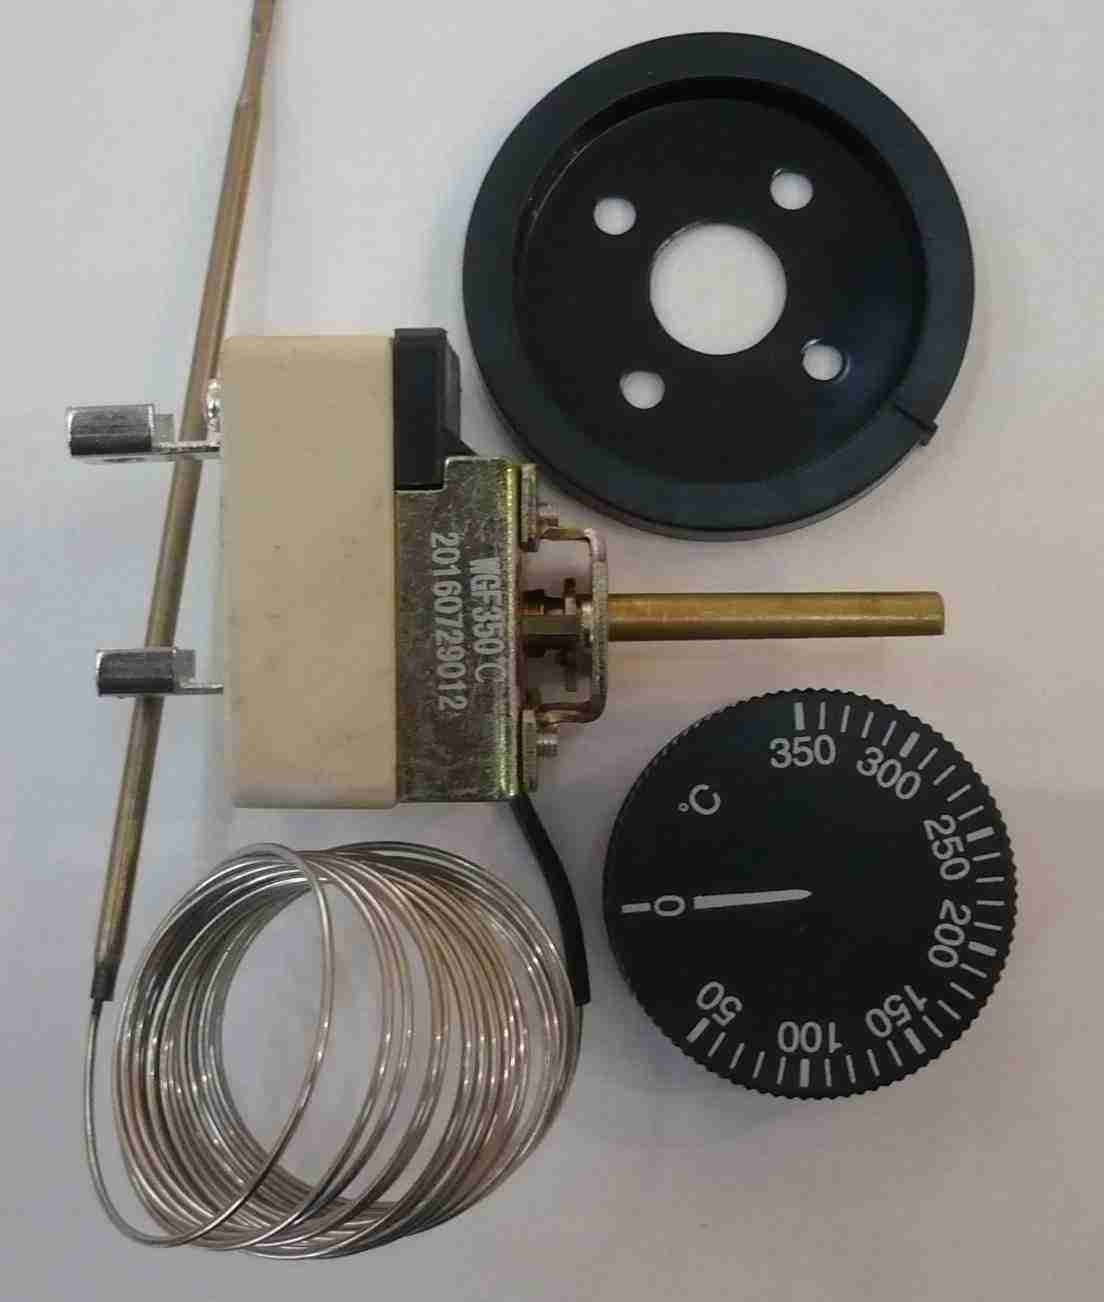 Терморегулятор WGF-350°С с ручкой (+50...+350°С, капилляр 2,5 м, 16А, 220в) Фирма Ён Сыктывкар